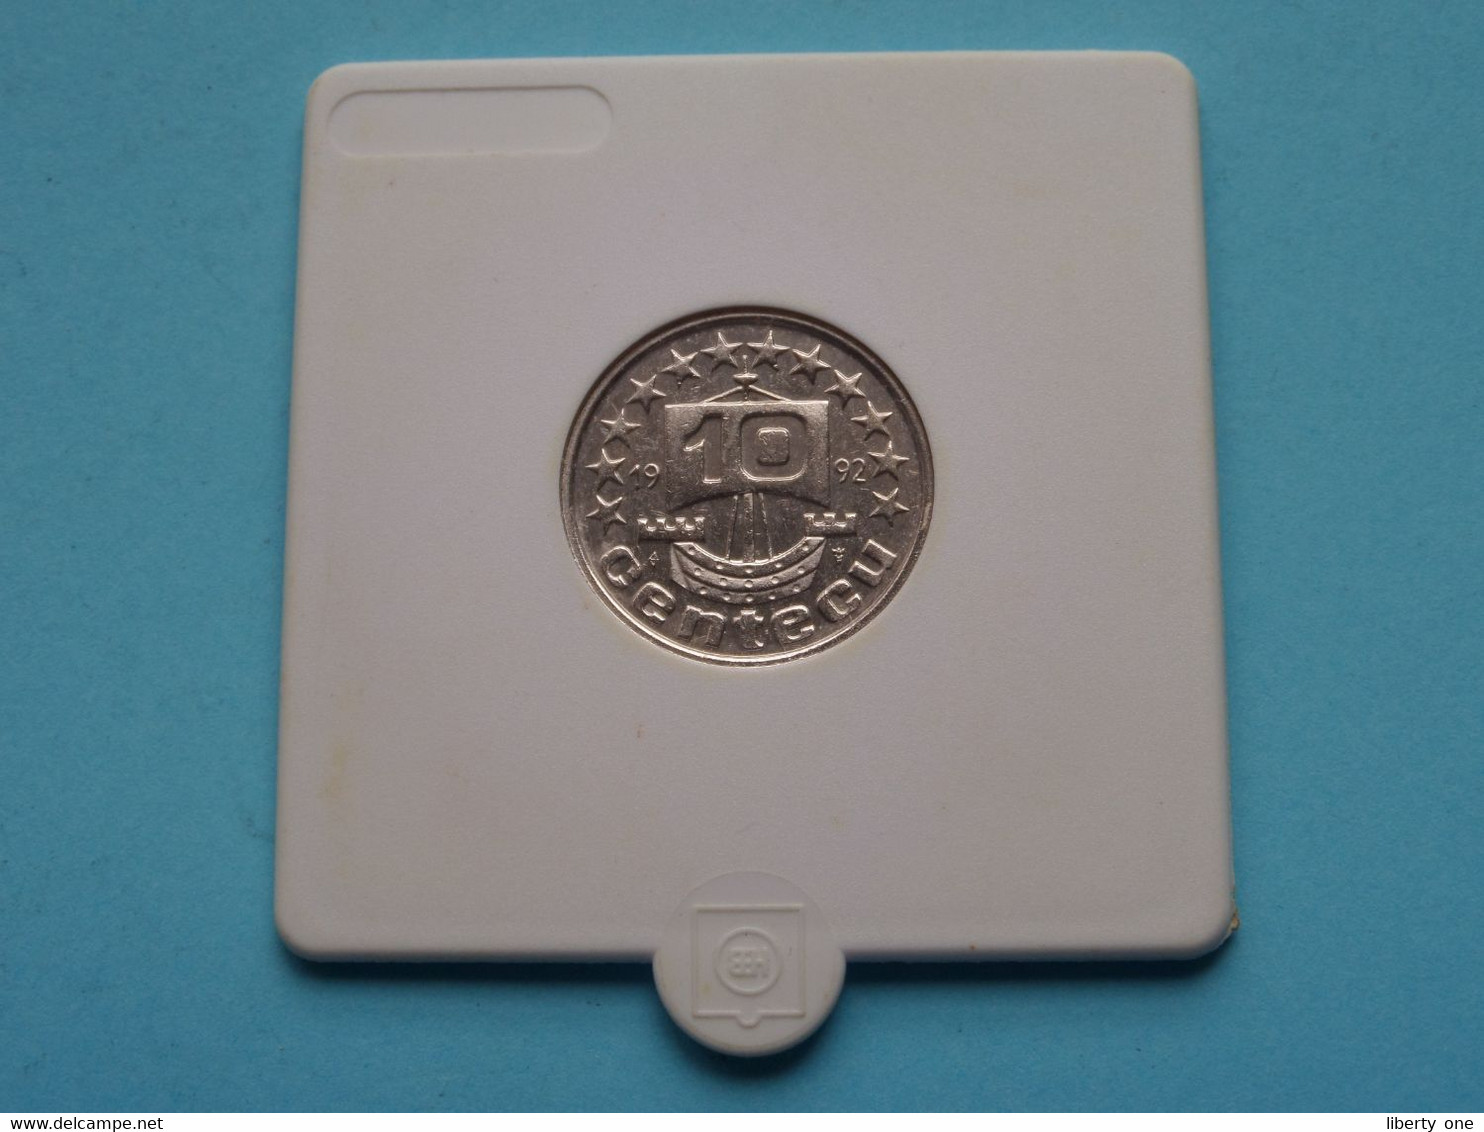 1992 - 10 Centecu > De Nederlanden ( For Grade, Please See Photo ) Nickel ! - Trade Coins